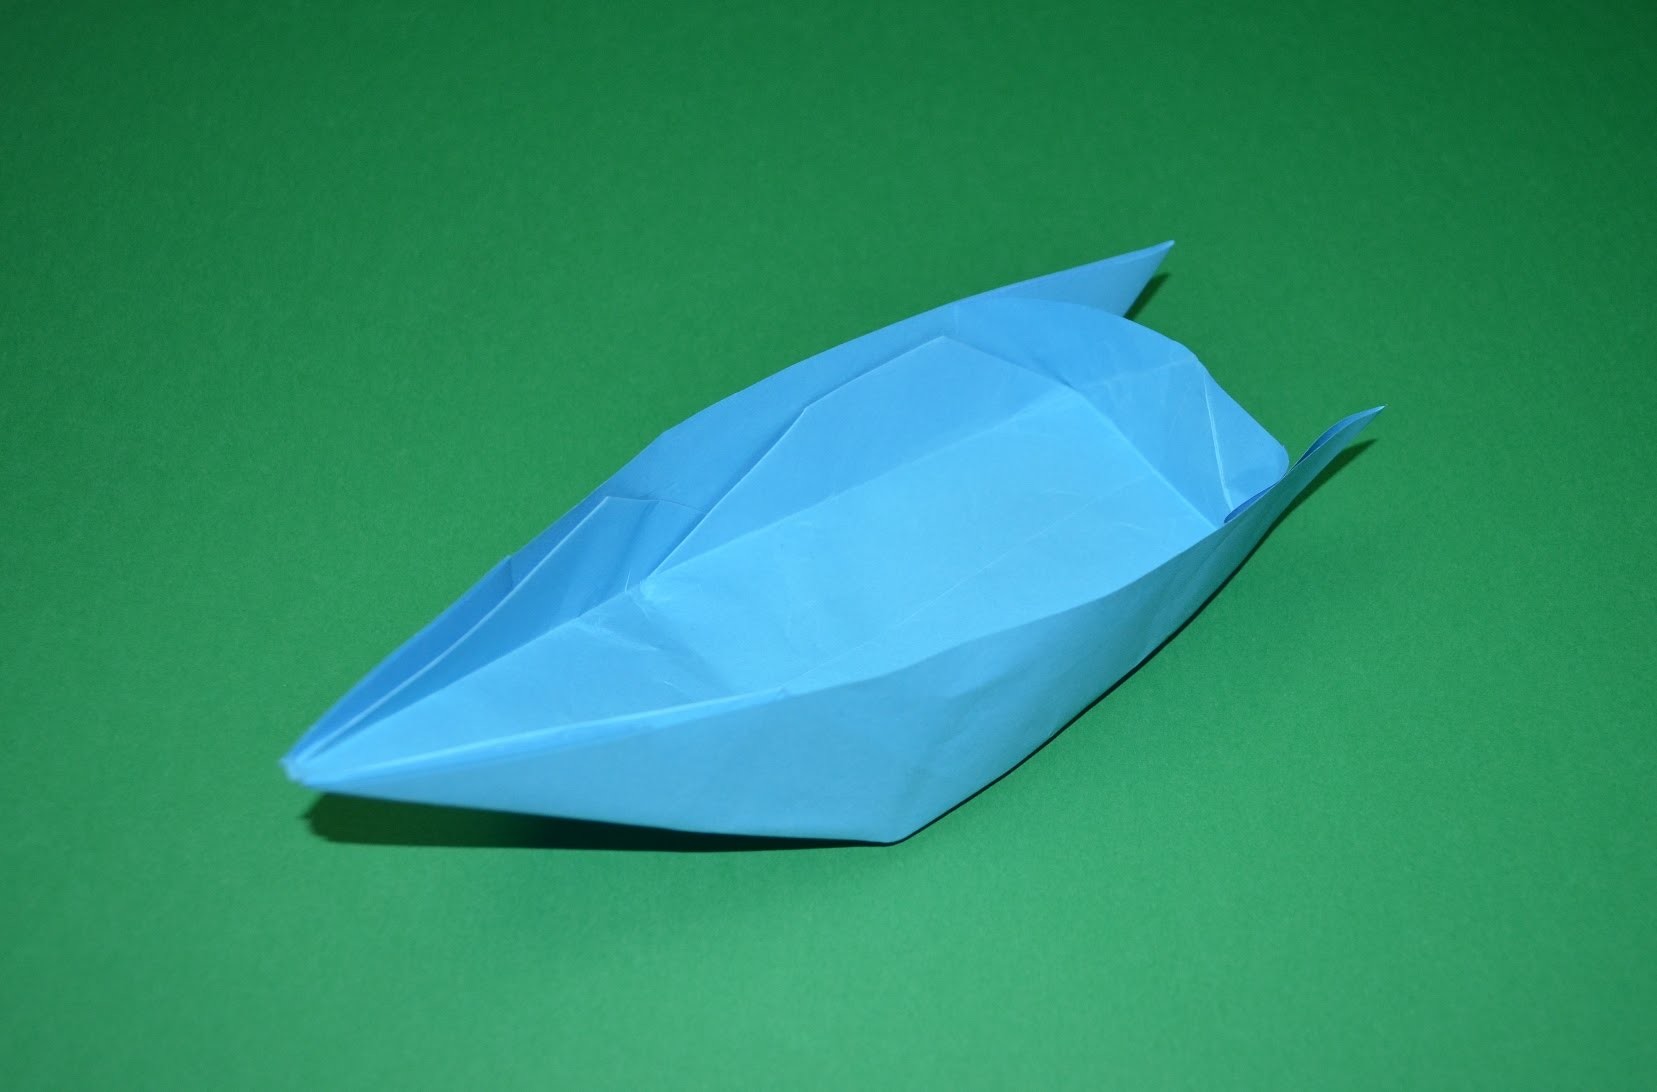 Como hacer un barco de papel origami